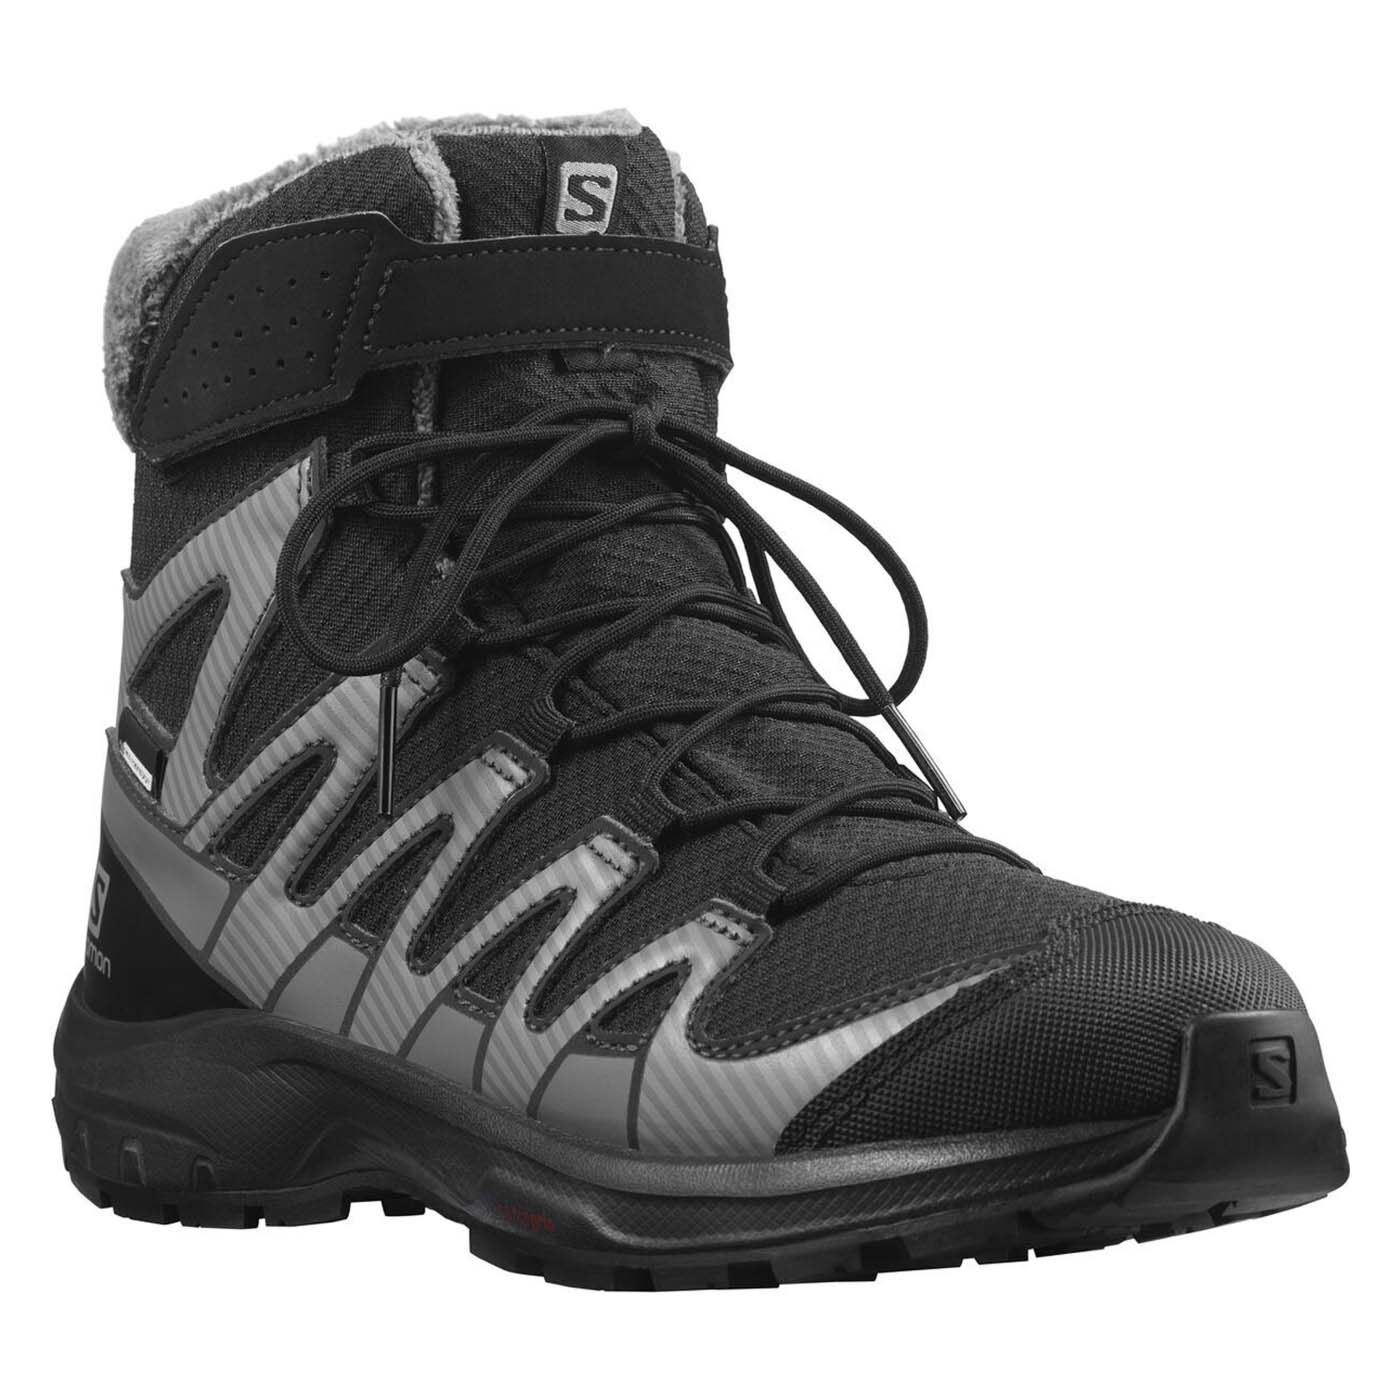 Kindheit Schuhe V8 BLACK/PHANT CSWP XA J L41433400 WINTER PRO SALOMON